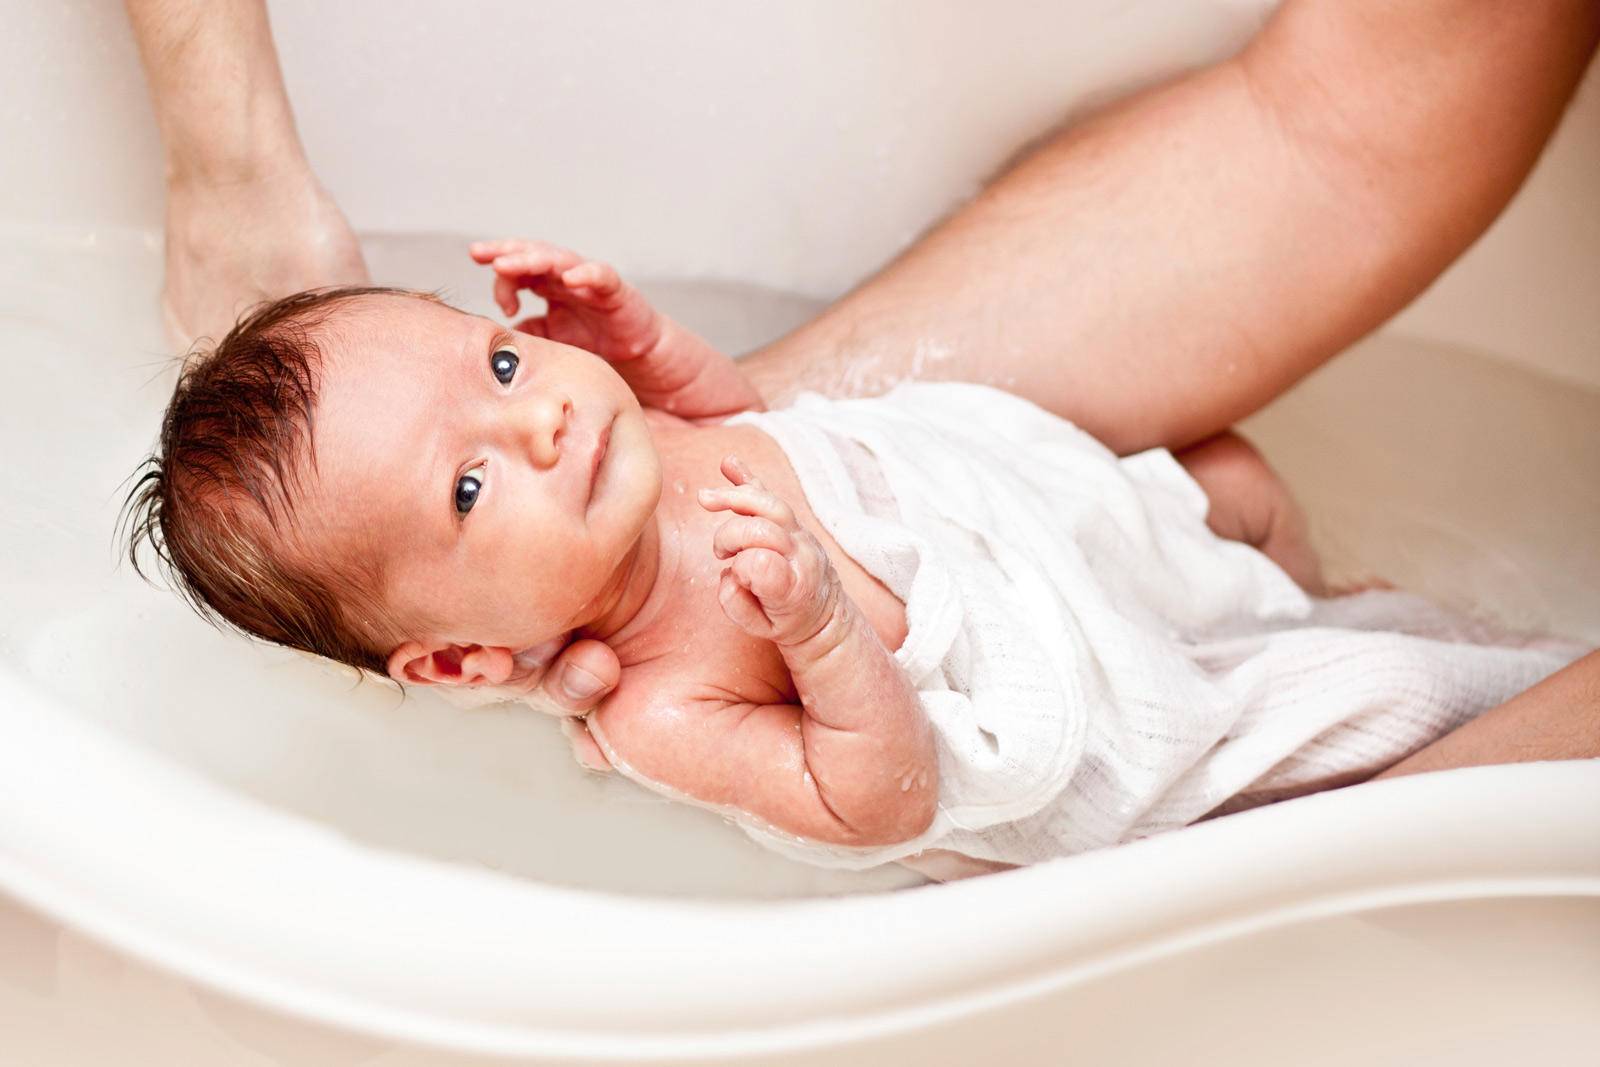 Гигиена новорожденного мальчика - правильные советы от комаровского